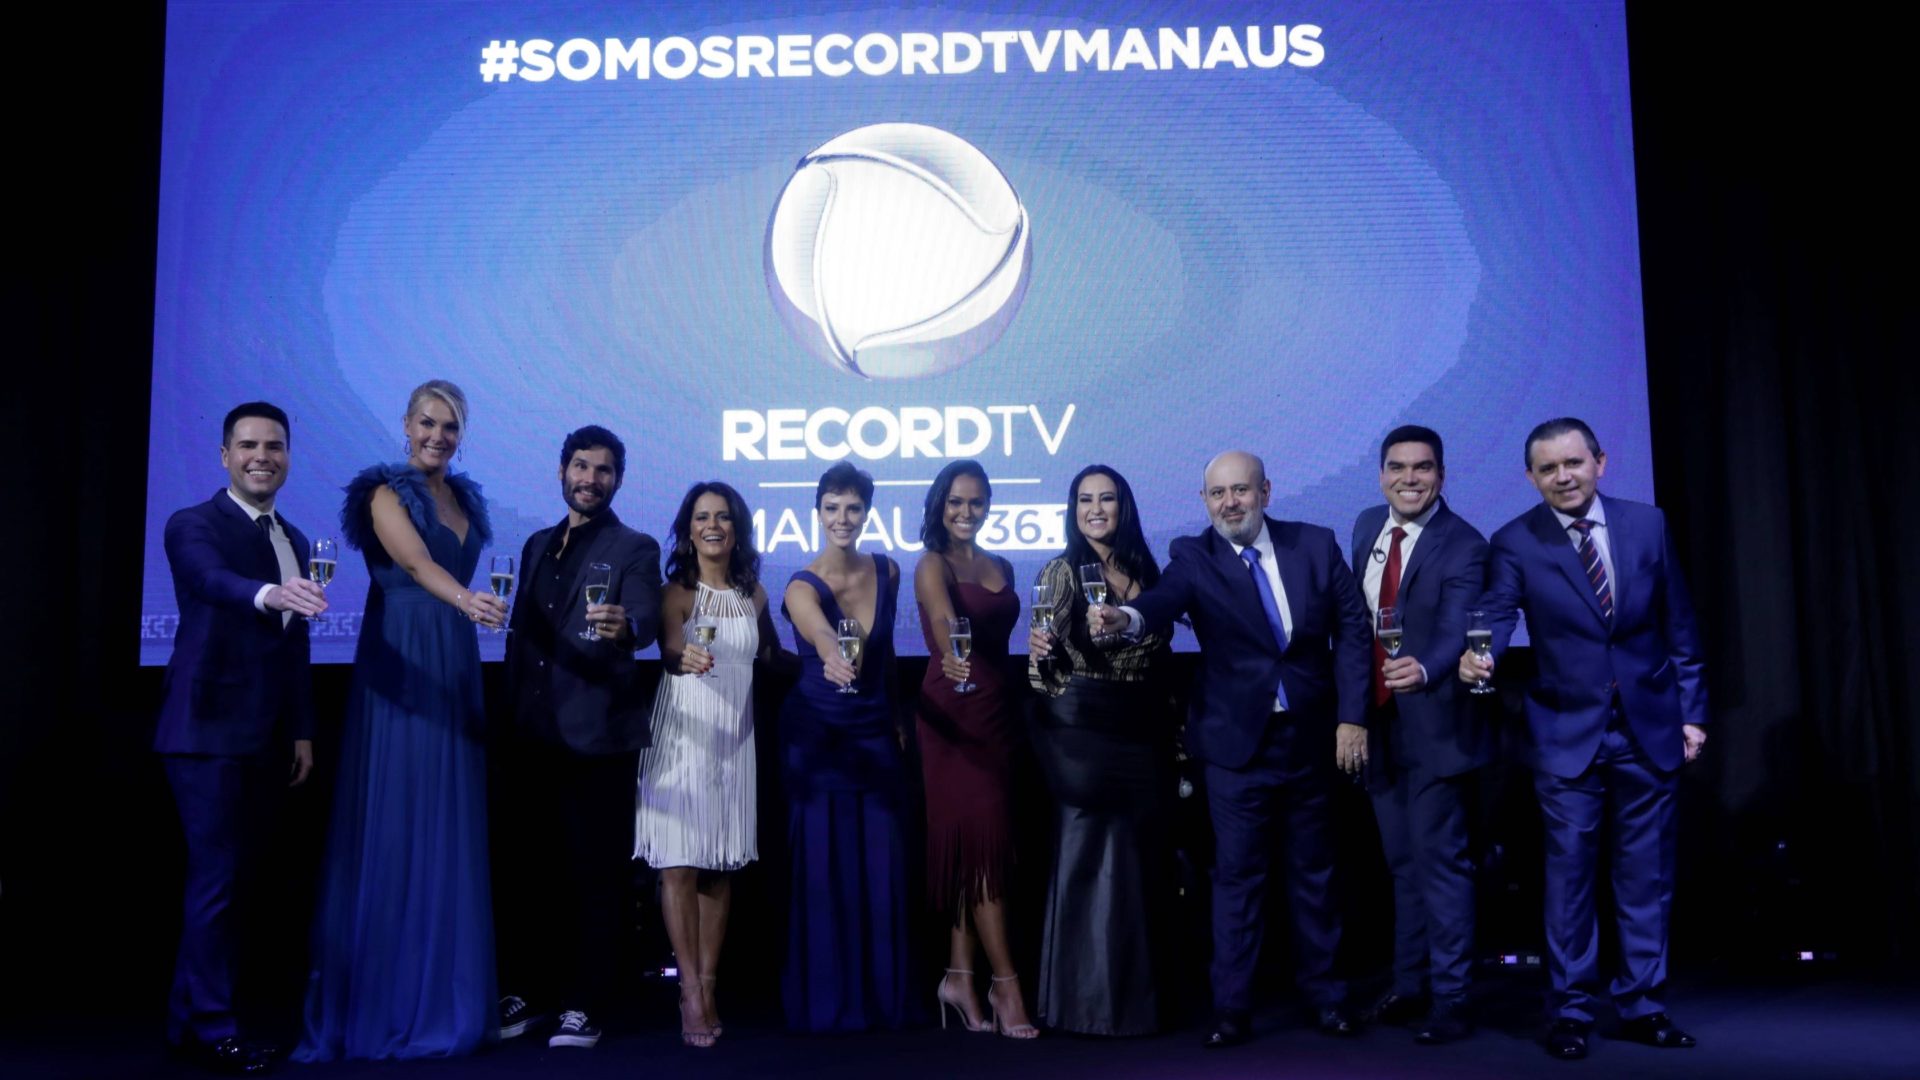 Elenco reunido no lançamento da Record TV Manaus